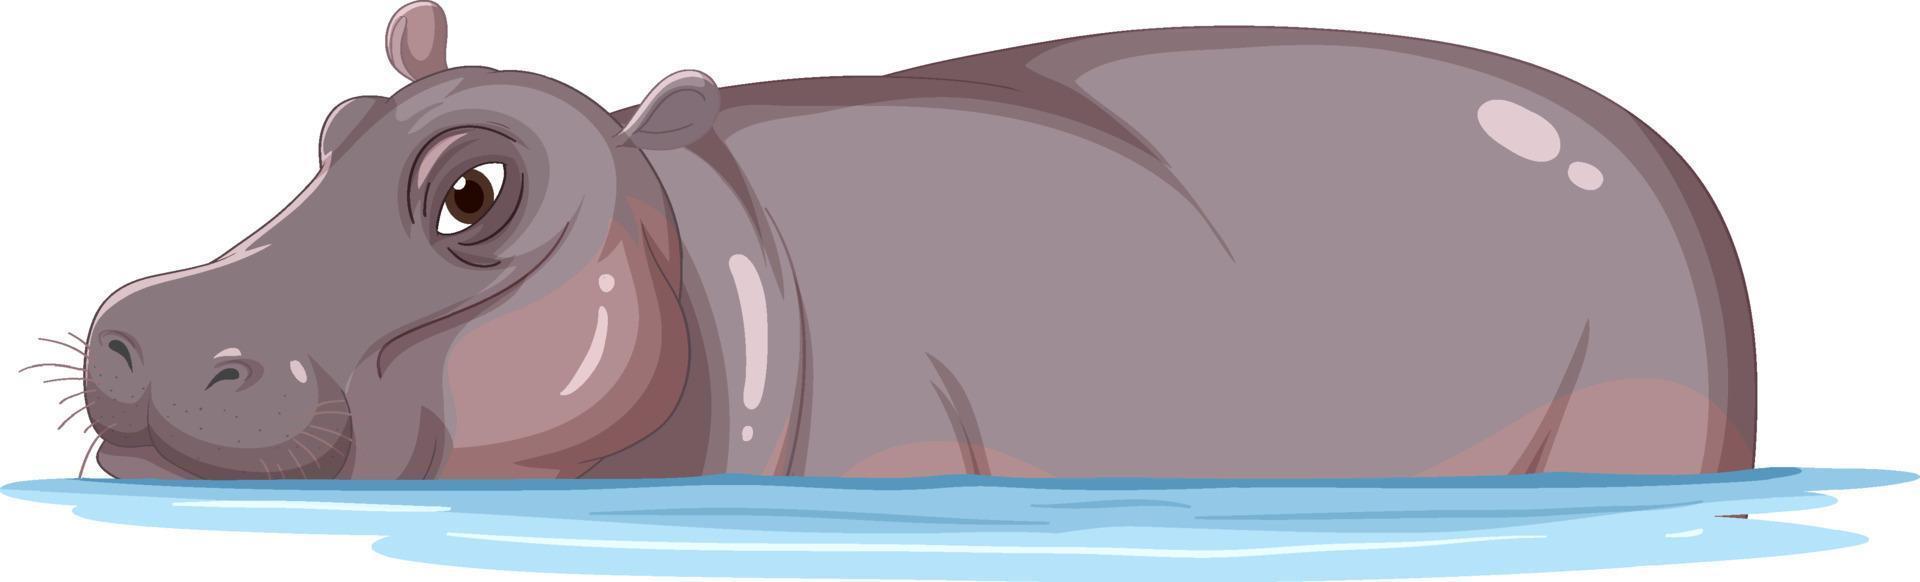 hippopotame dans l'eau vecteur